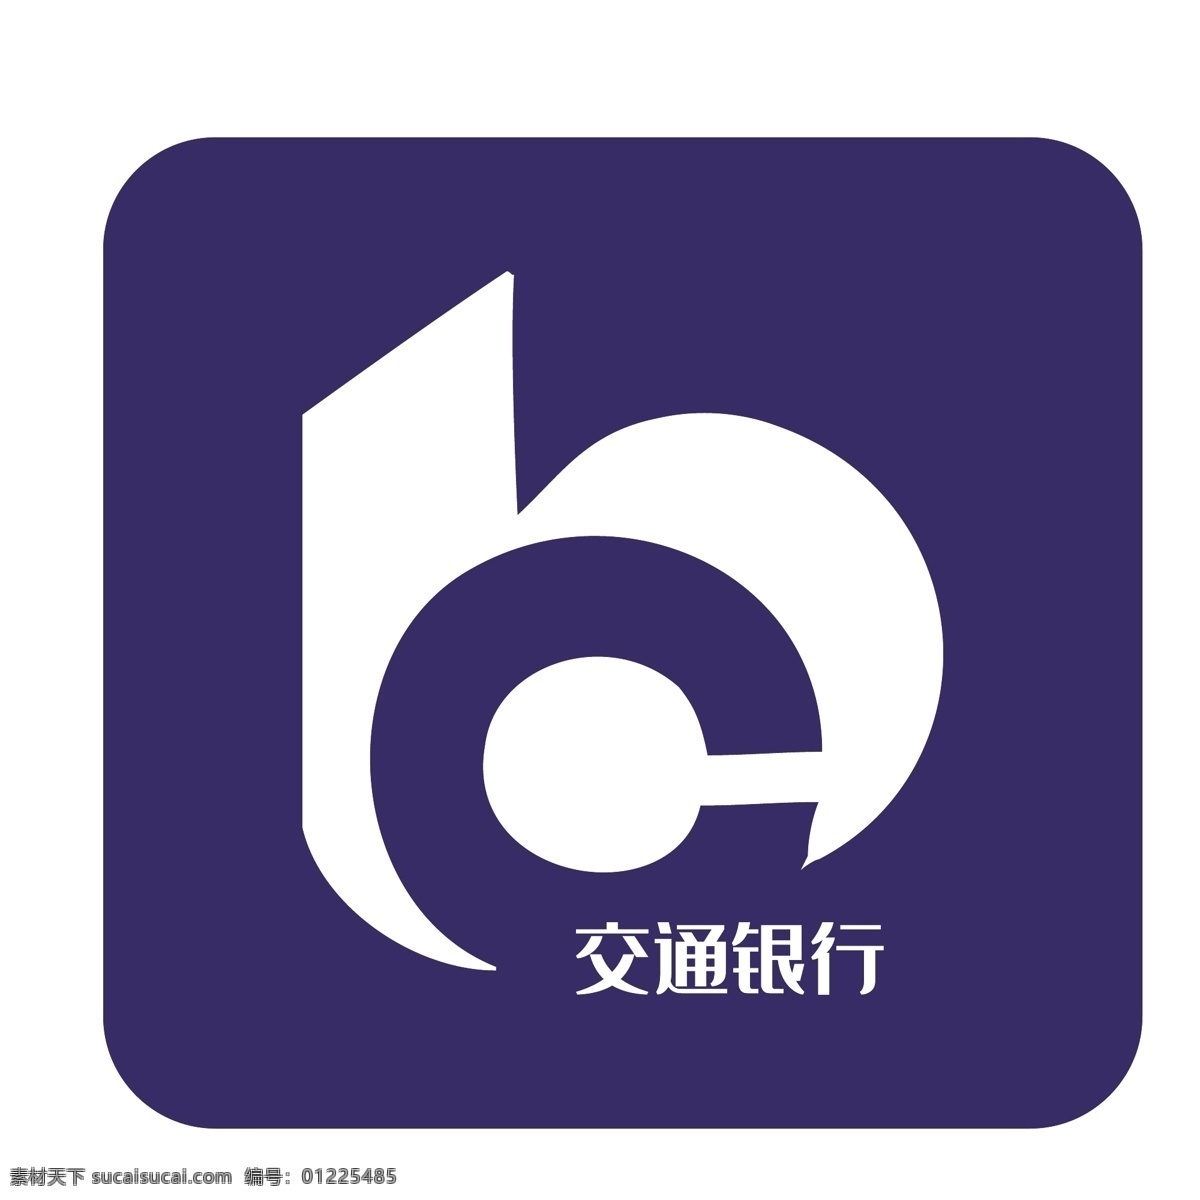 蓝色 矩形 交通银行 logo 图标 logo图标 手机app 2.5d 创意 扁平图标 千库原创 免抠图png